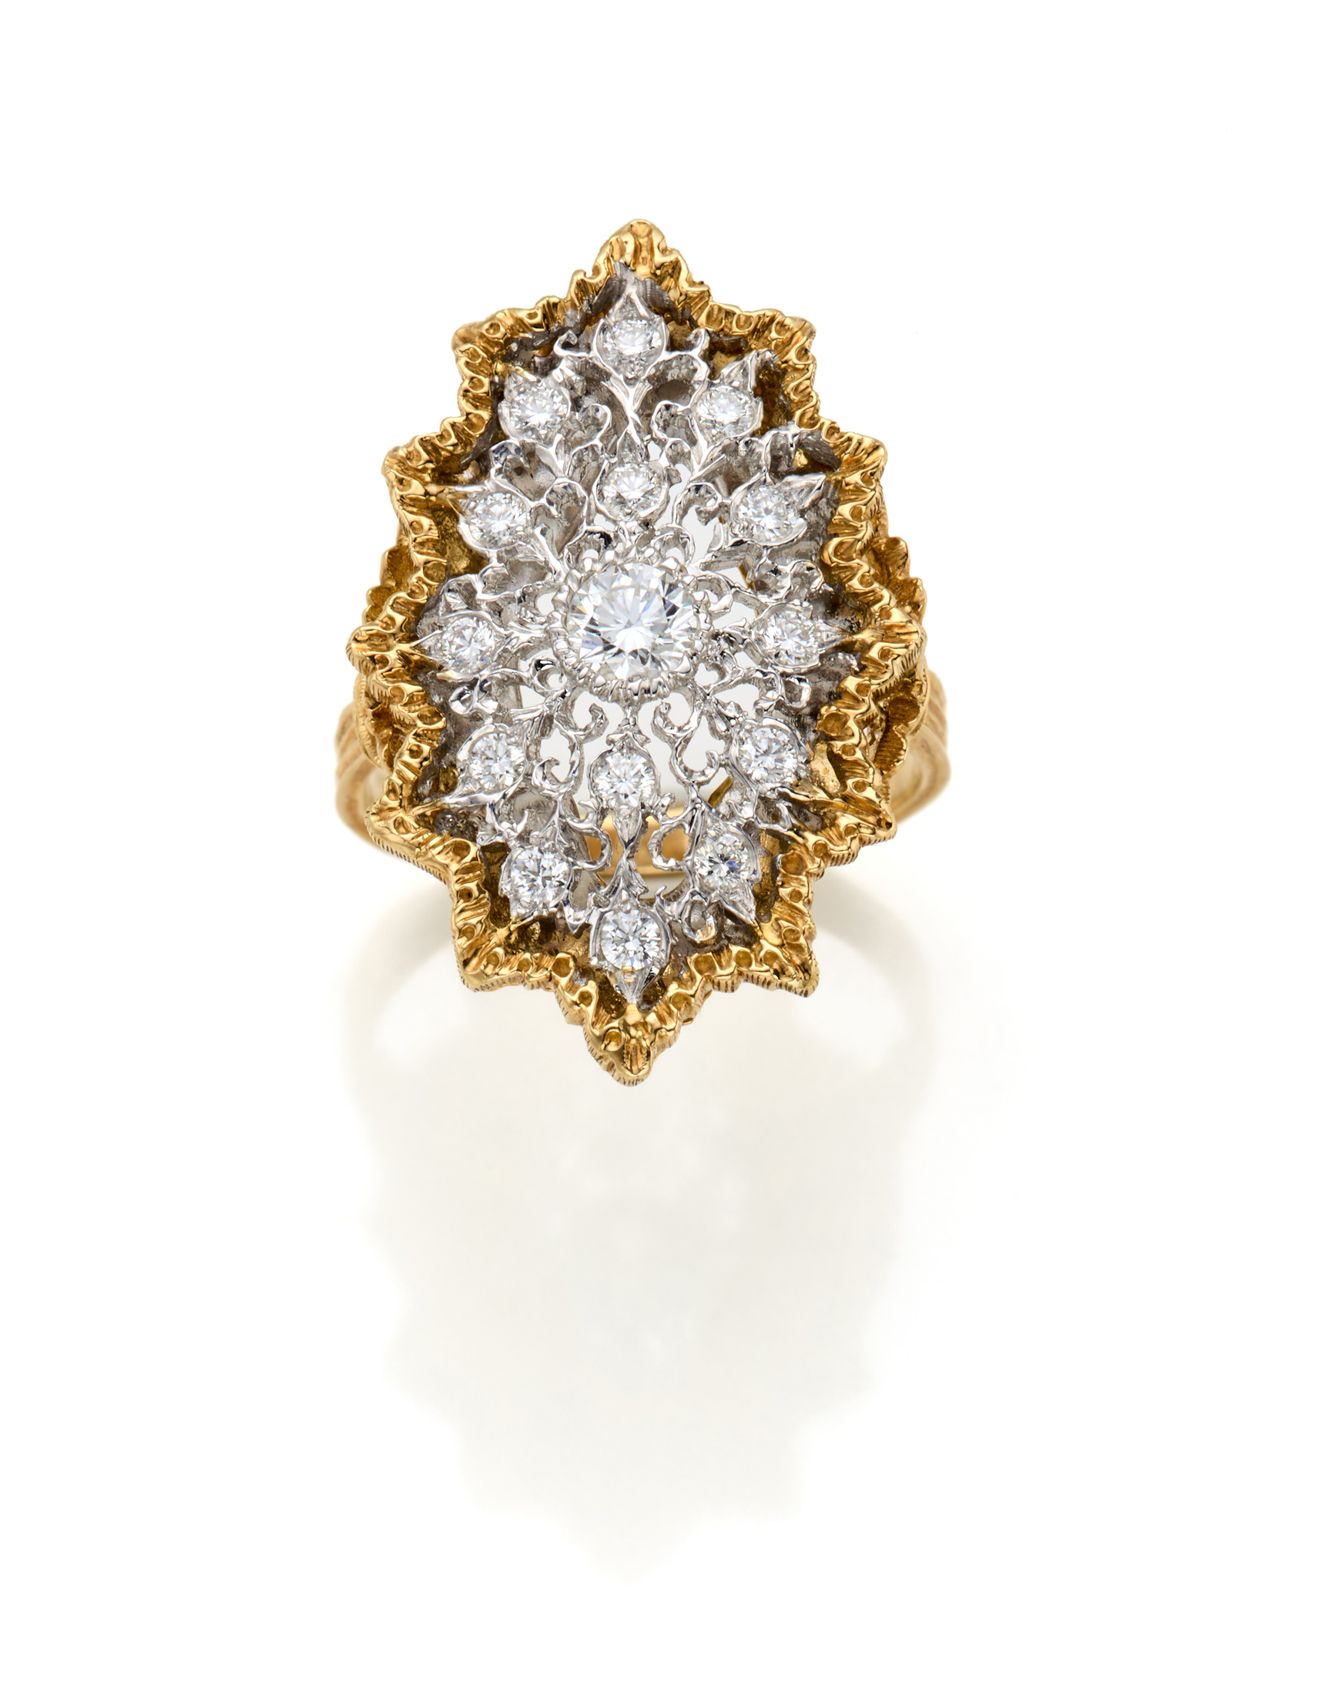 Null MARIO BUCCELLATI
双色金镂空钻石戒指，g 6.96约14/54尺寸。签名并标有M. Buccellati, 15 MI.

IT
MA&hellip;